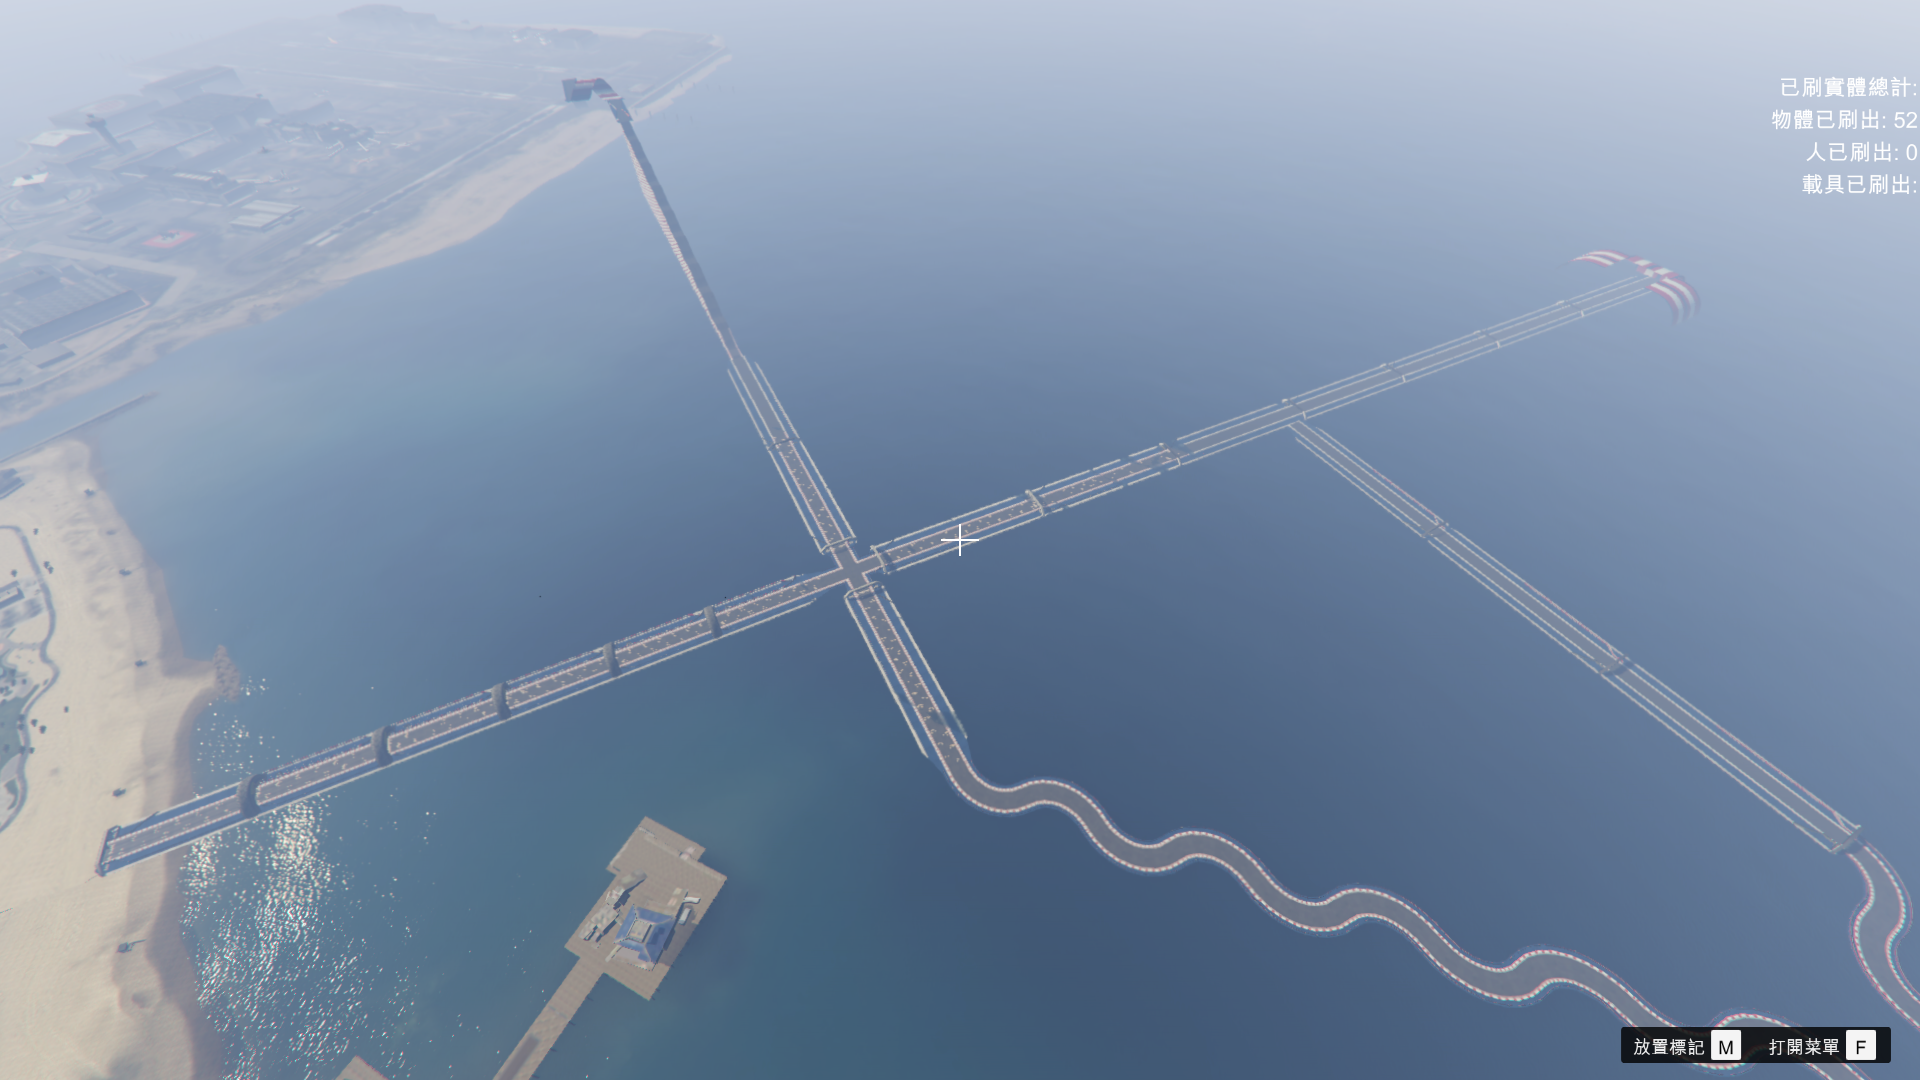 Gta5海上地图4 0版本mod 天空赛道海上赛道弯道赛道全程1万公里历时15天打造围绕整个洛圣都下载 V4 0版本 侠盗猎车手系列